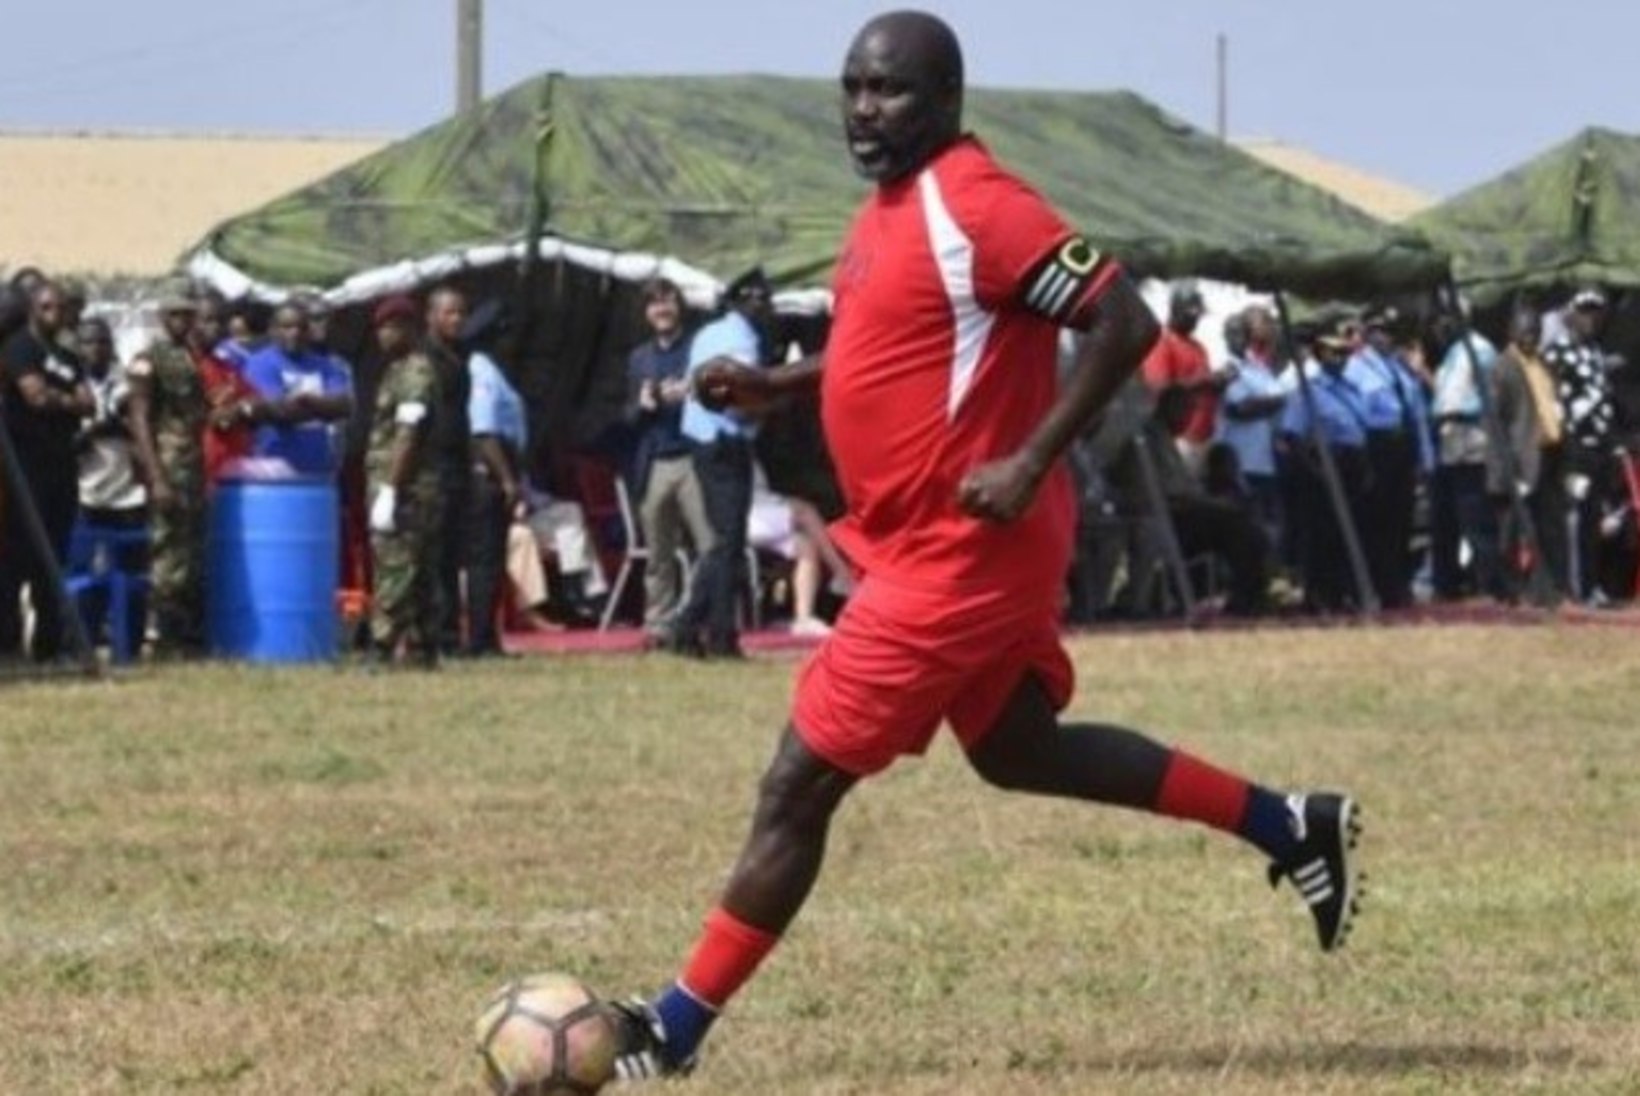 Jalgpallilegendist president esindas 51aastaselt koondist ning ärritas nigeerlasi